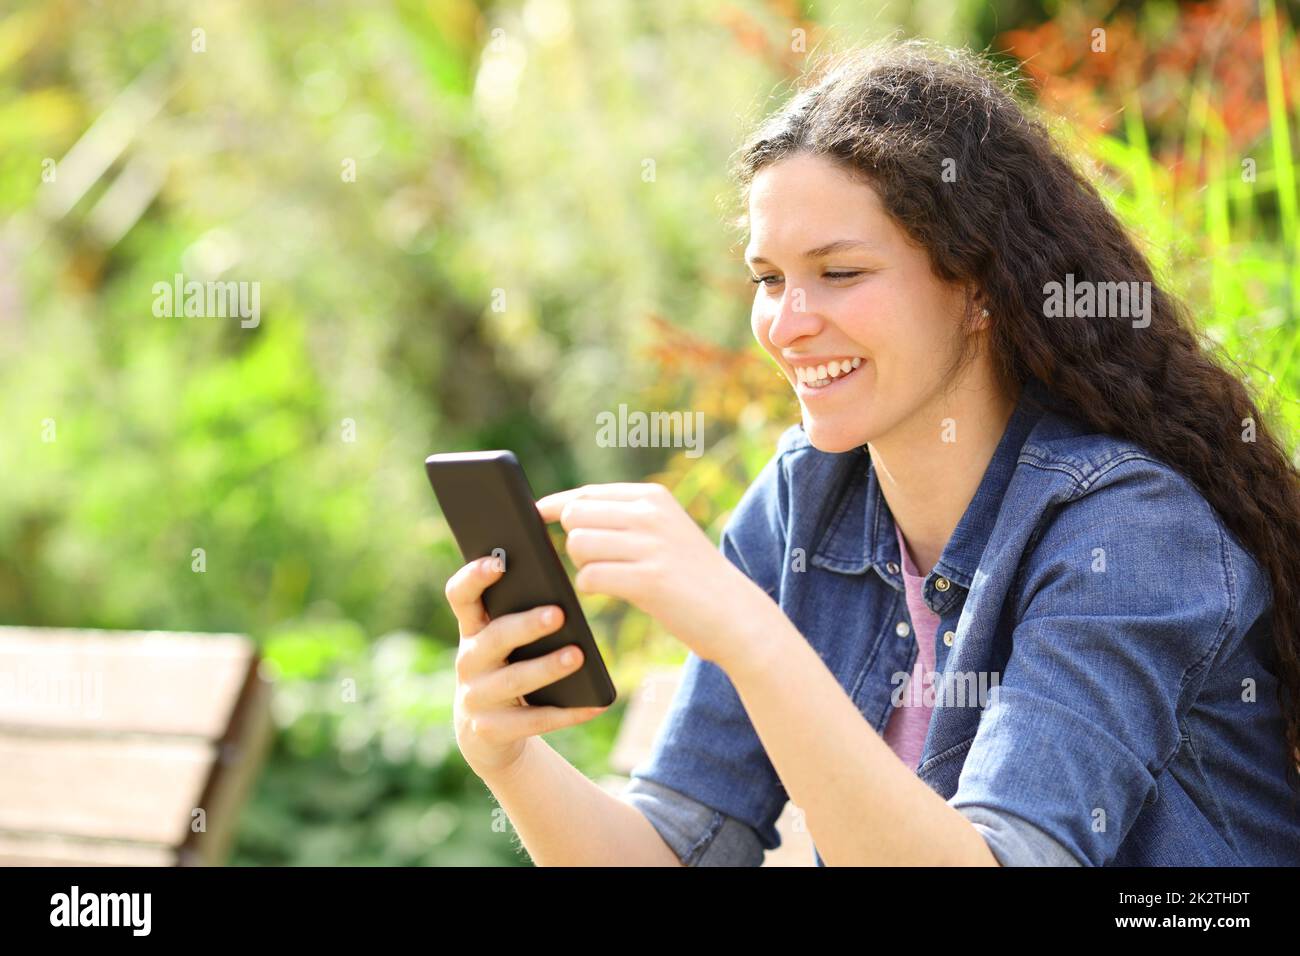 Une femme heureuse utilisant un smartphone dans un parc vert Banque D'Images